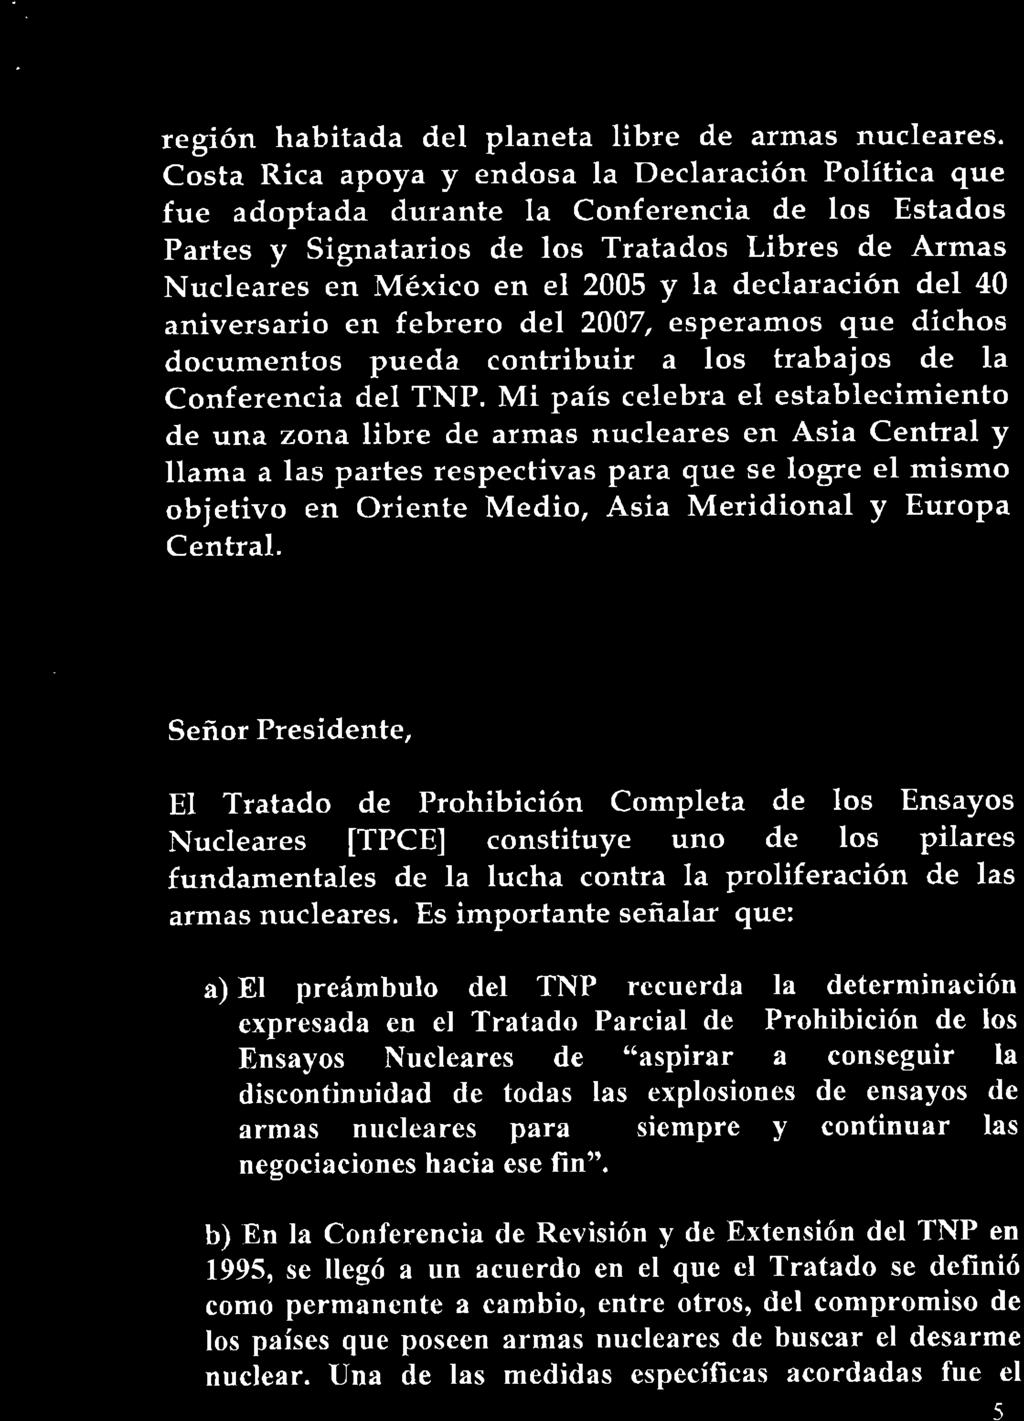 b) En la Conferencia de Revision y de Extension del TNP en 1995, se liego a